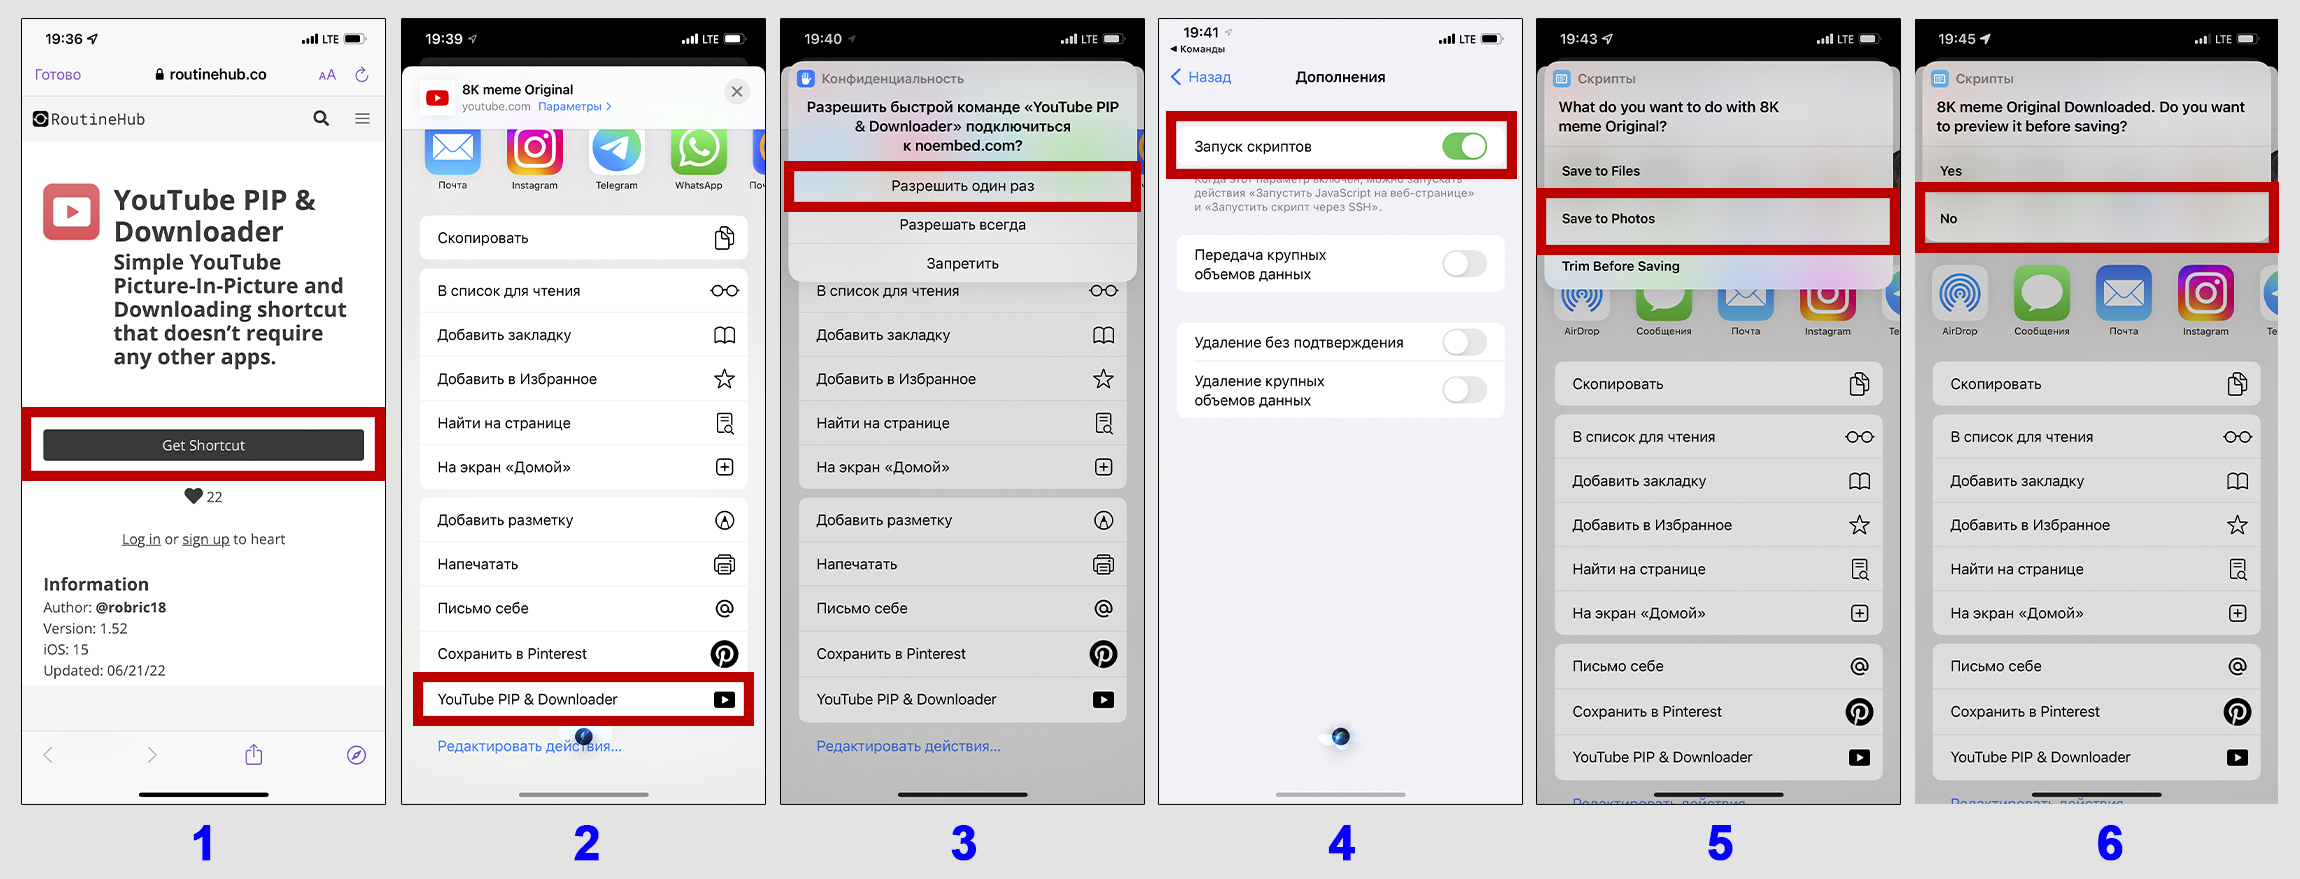 Процесс подключения команды Youtube PIP Downloader к браузеру Safari в IPhone.